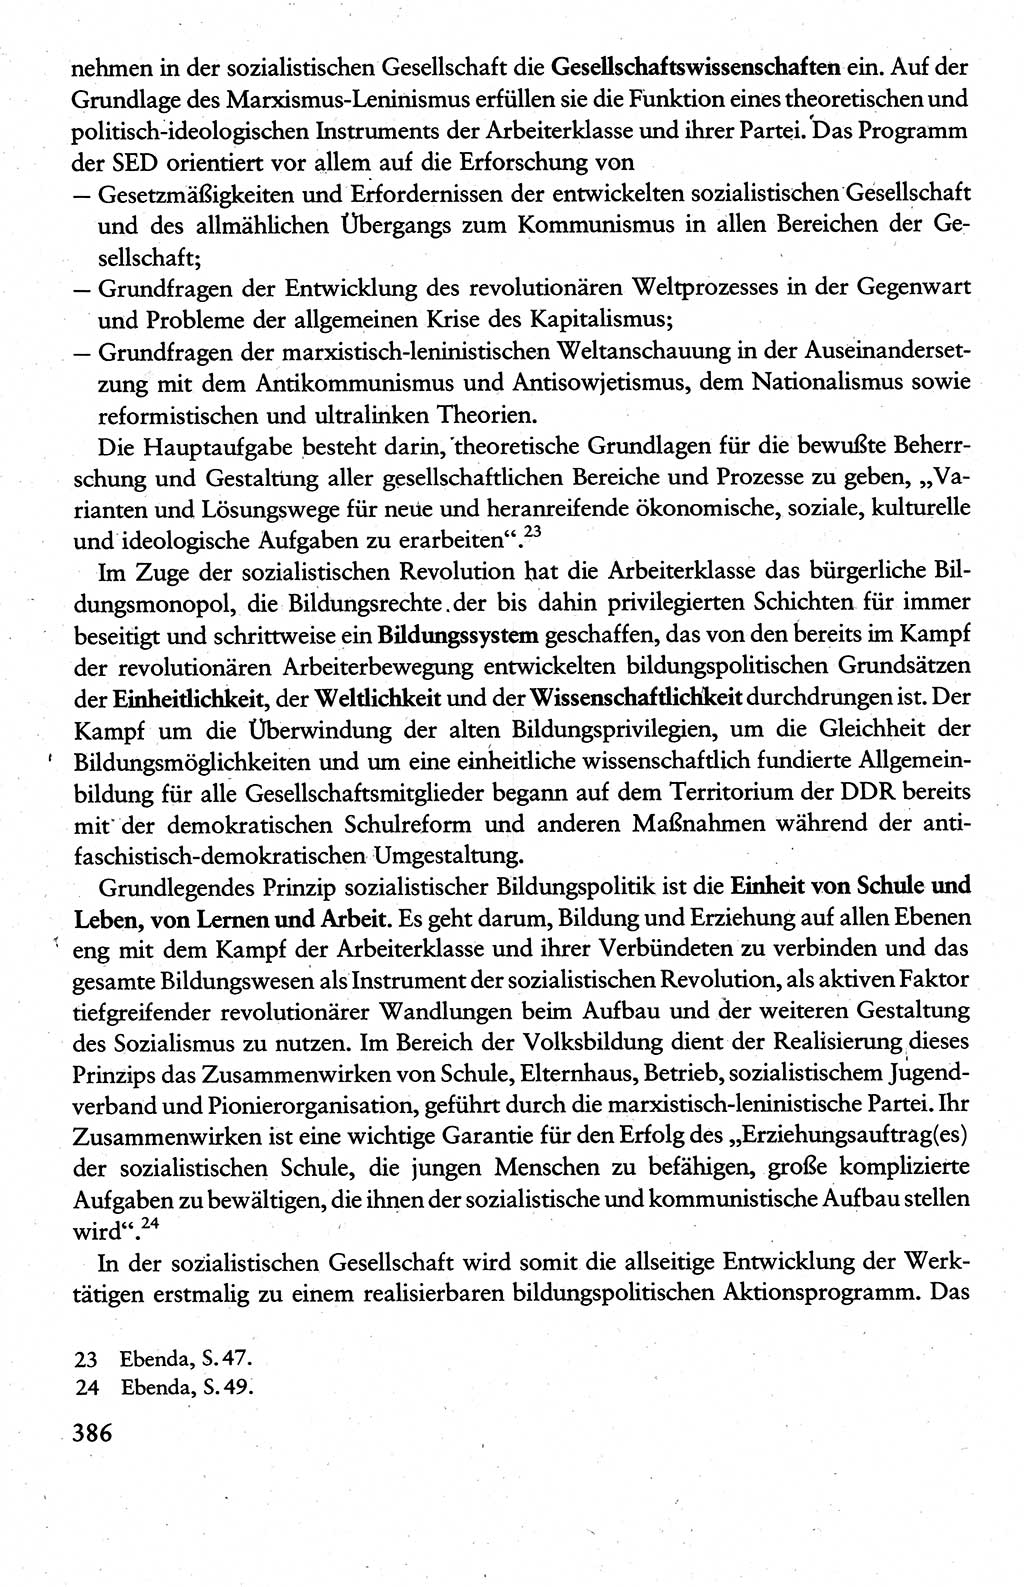 Wissenschaftlicher Kommunismus [Deutsche Demokratische Republik (DDR)], Lehrbuch für das marxistisch-leninistische Grundlagenstudium 1983, Seite 386 (Wiss. Komm. DDR Lb. 1983, S. 386)